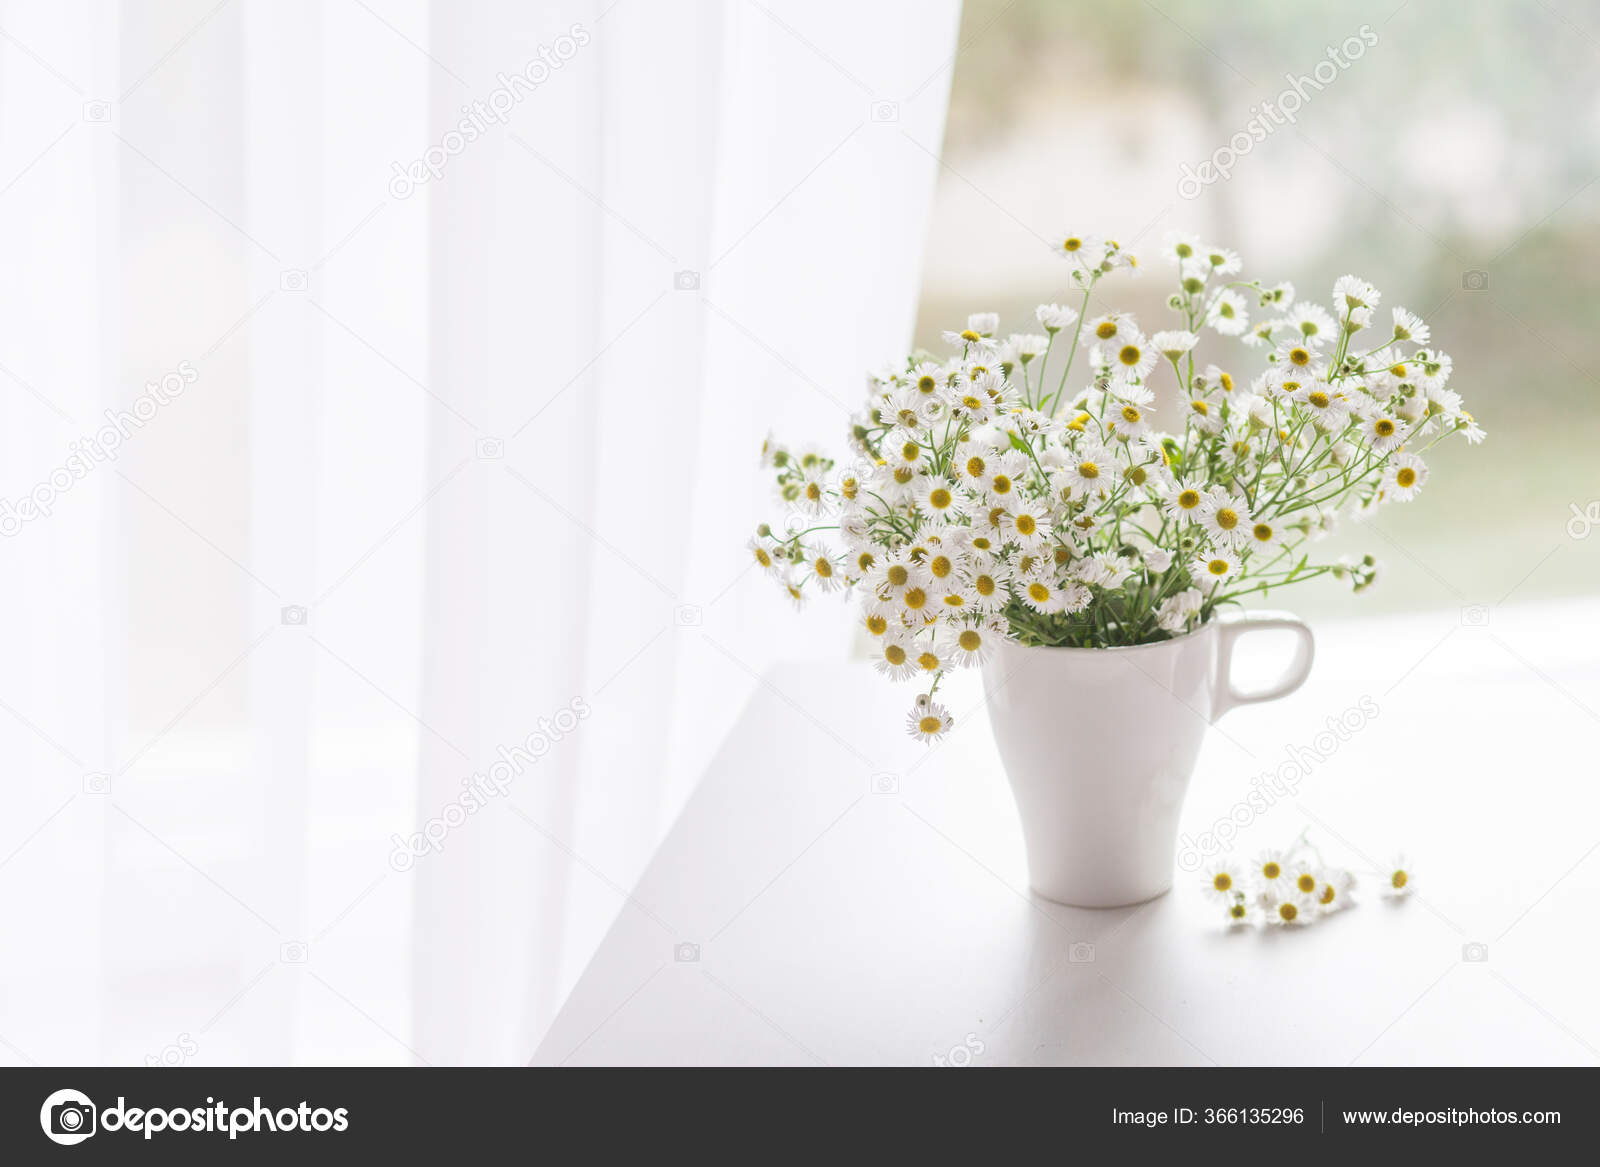 白いカップに優しいカモミールの花束 部屋の朝の光 柔らかい家庭の装飾 白い壁の背景と木製のテーブルの上に白い花の花瓶 内装だ グリーティングカード スペースのコピー ストック写真 C Liudmila Fadzeyeva Gmail Com